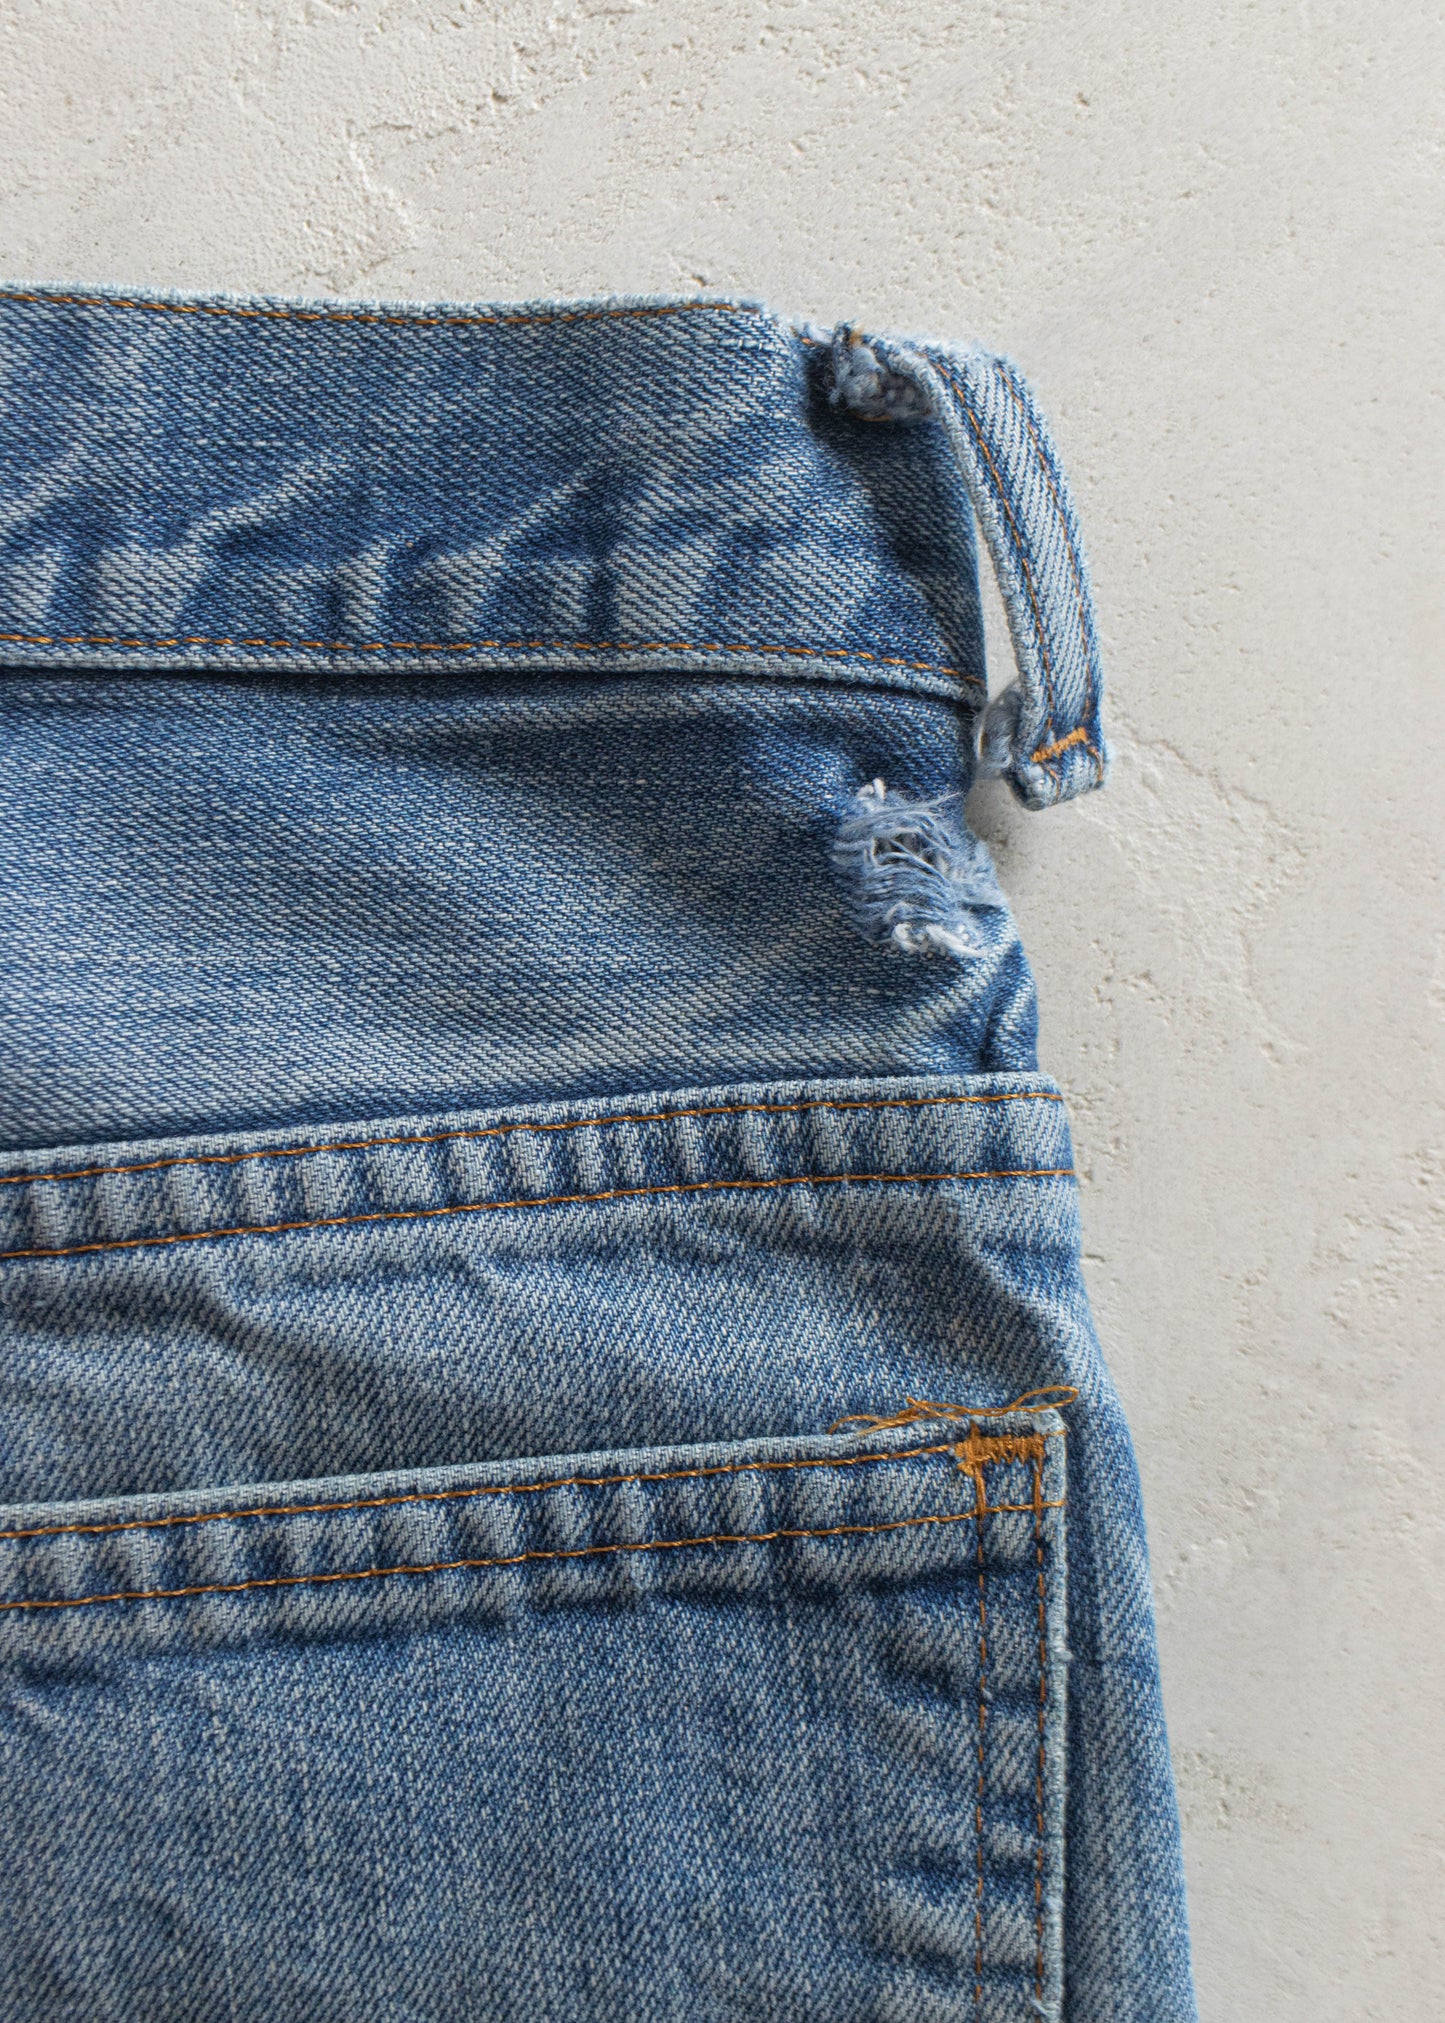 Vintage 1980s Levi's Orange Tab Midwash Jeans Size Women's 24